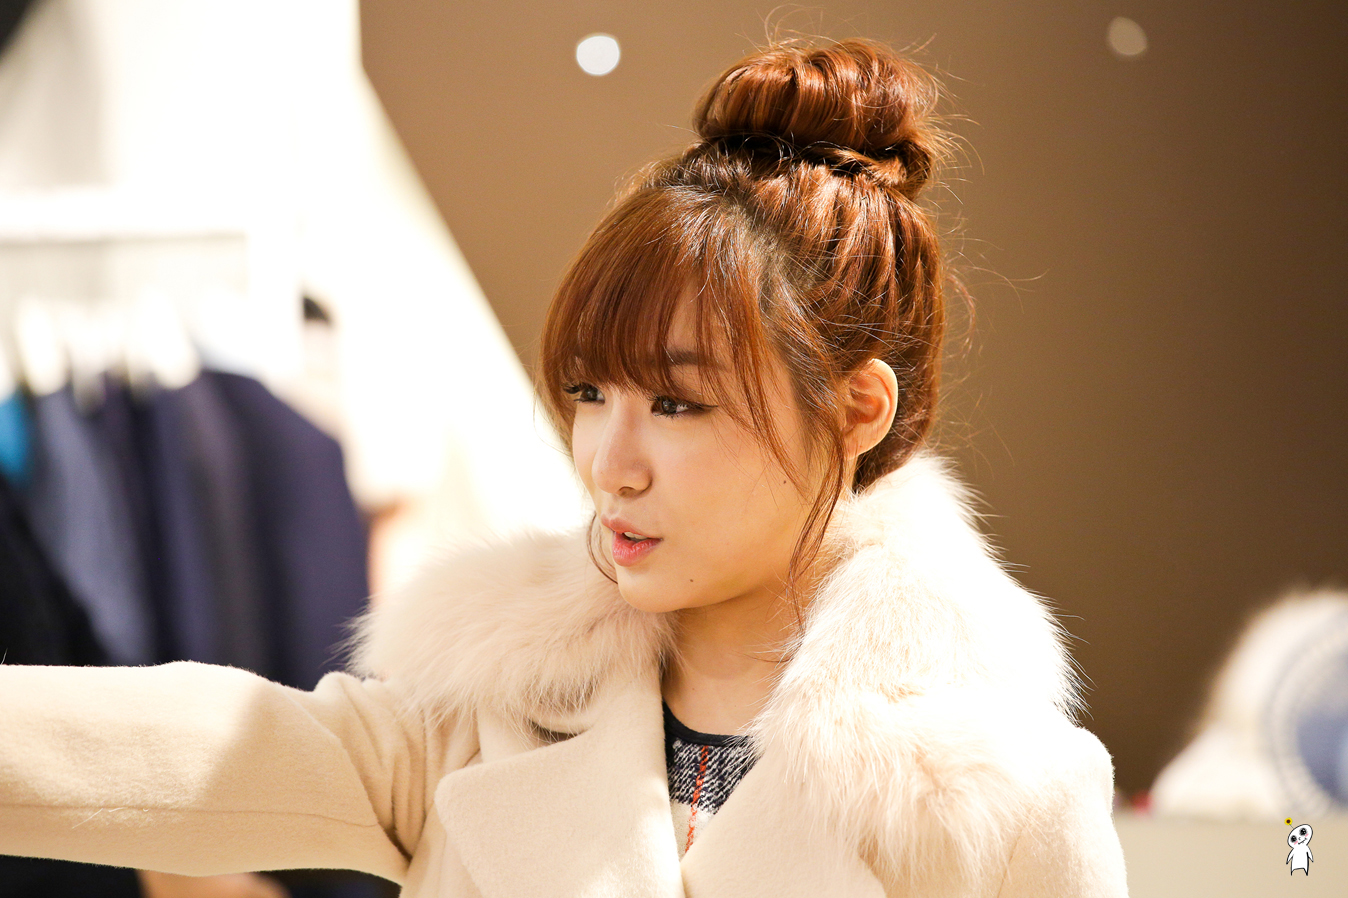 [PIC][28-11-2013]Tiffany ghé thăm cửa hàng "QUA" ở Hyundai Department Store vào trưa nay - Page 3 24237F4152980C9732D754